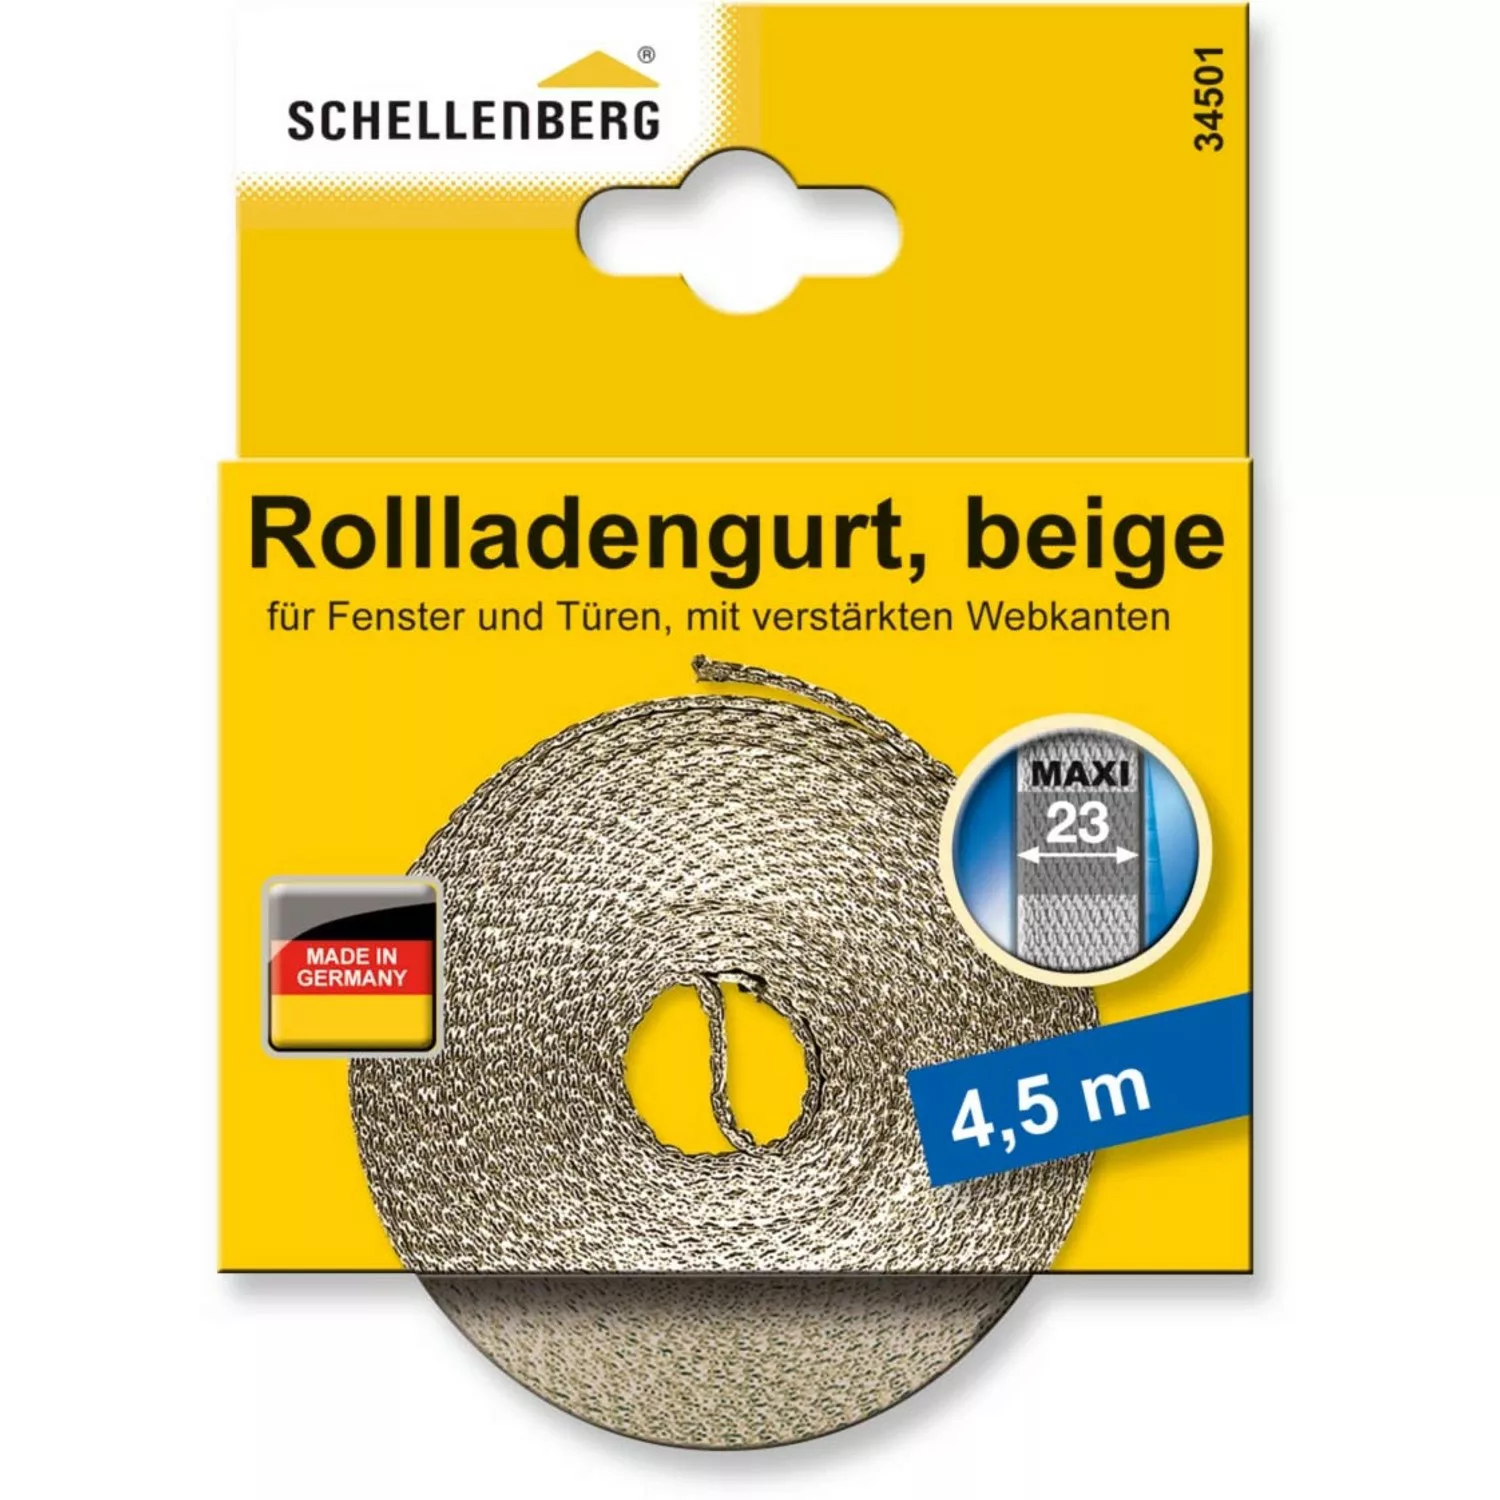 Schellenberg Rollladengurt Maxi 23 mm 4,5 m Beige günstig online kaufen